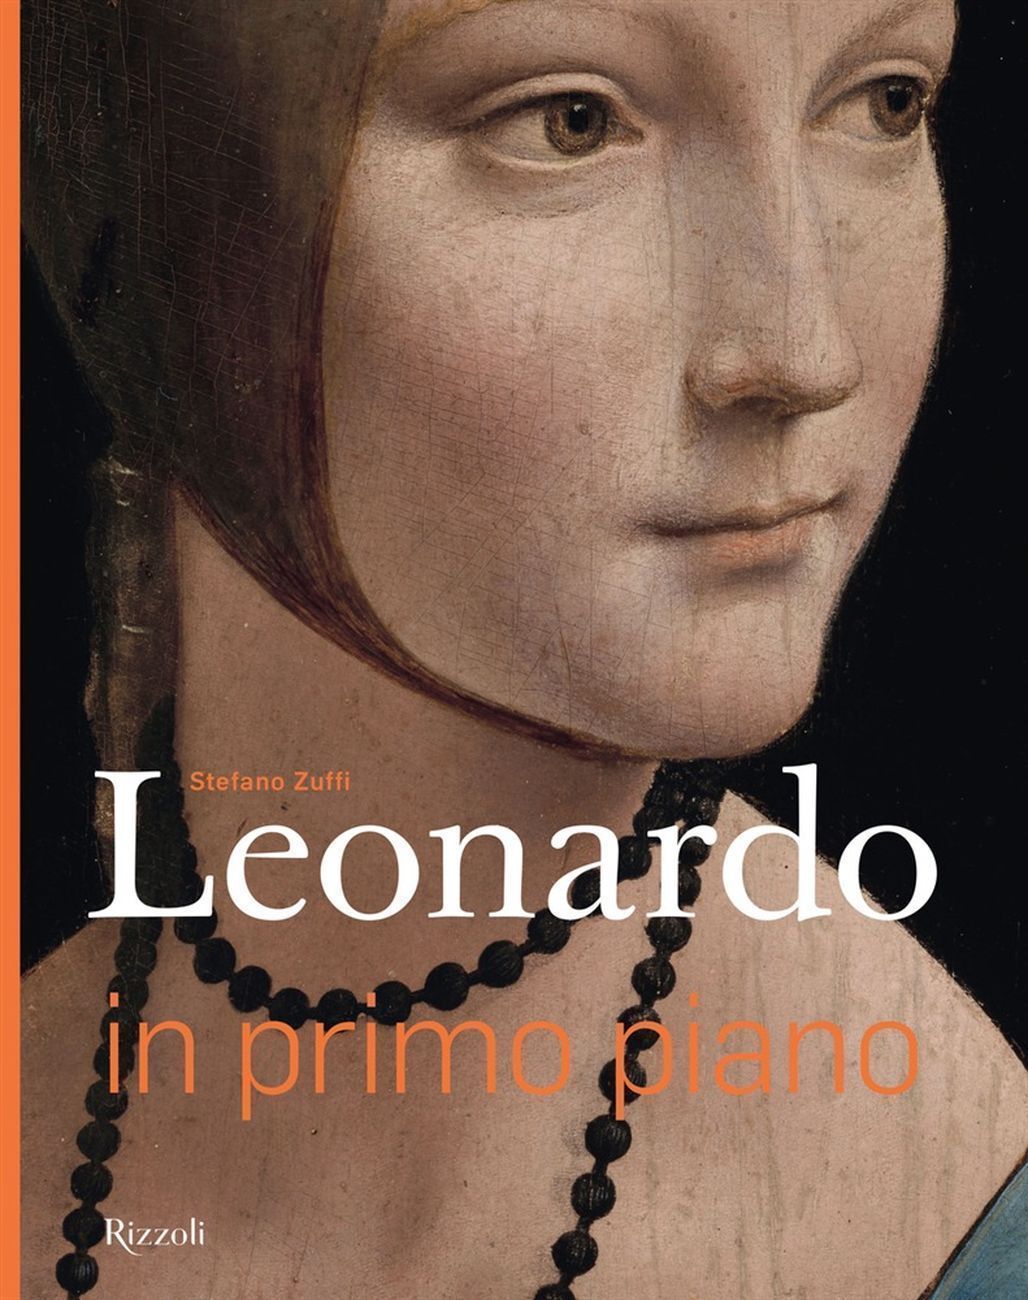 Stefano Zuffi – Leonardo in primo piano (Electa Rizzoli, Milano 2019)